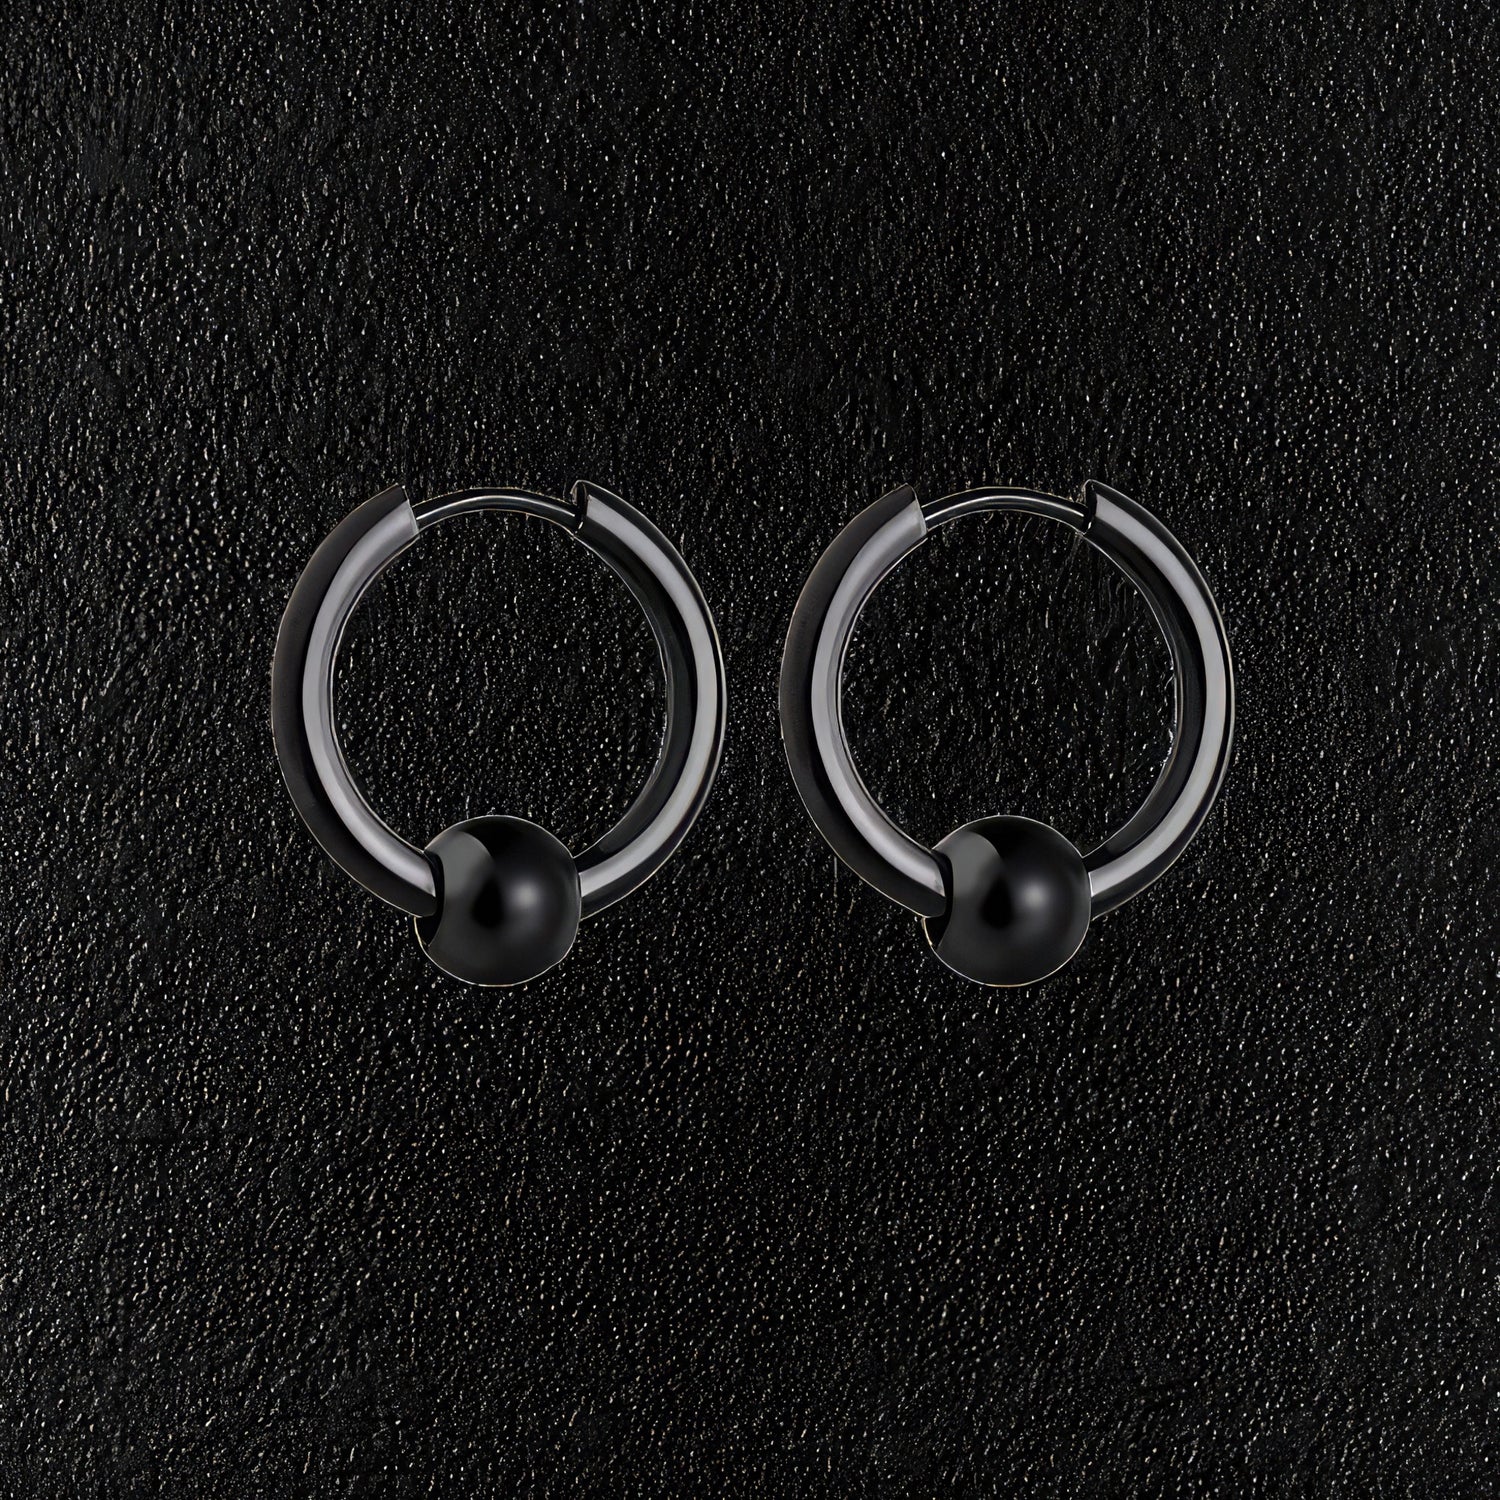 Black Stainless Steel Hoop & Ball Earrings